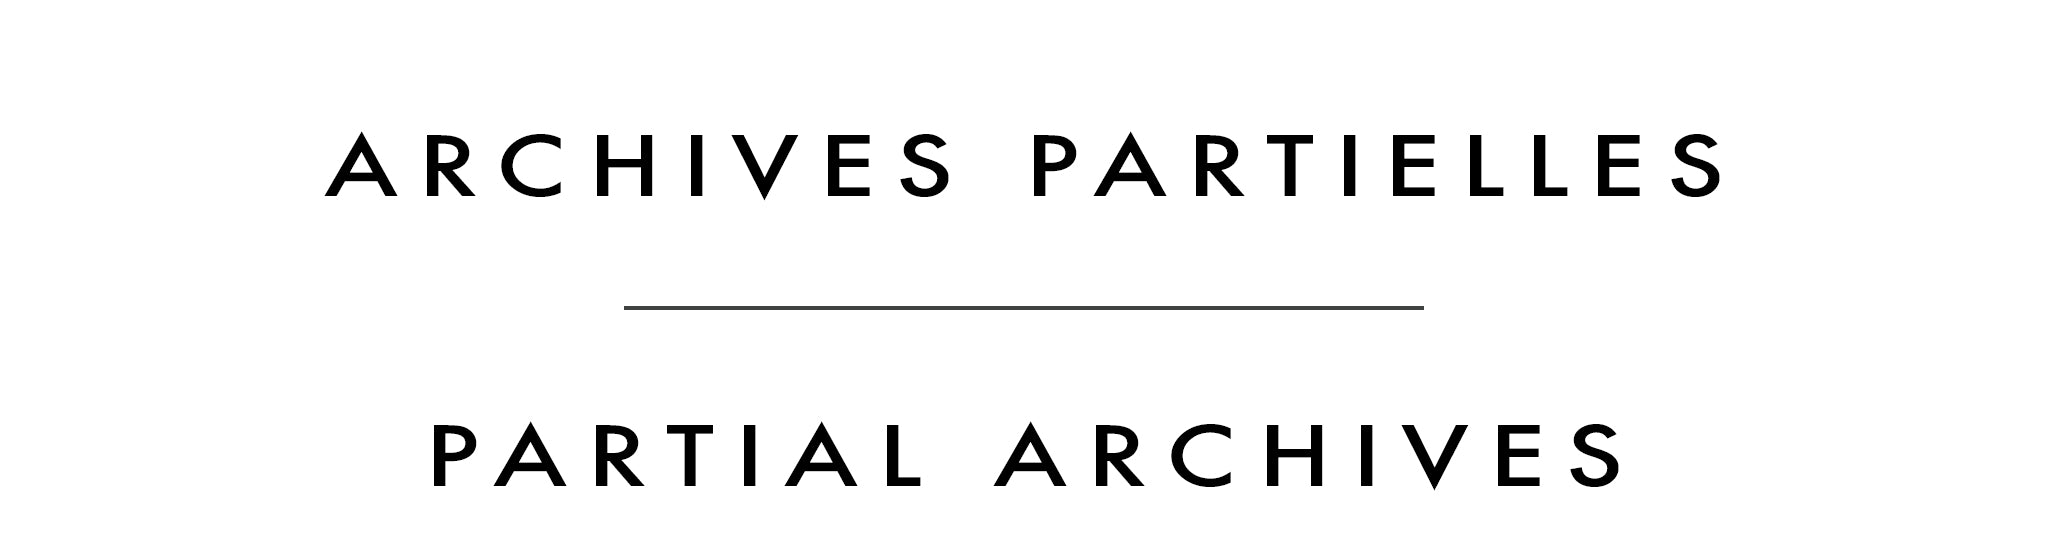 Archives partielles | Partial Archives | Cameron Bird